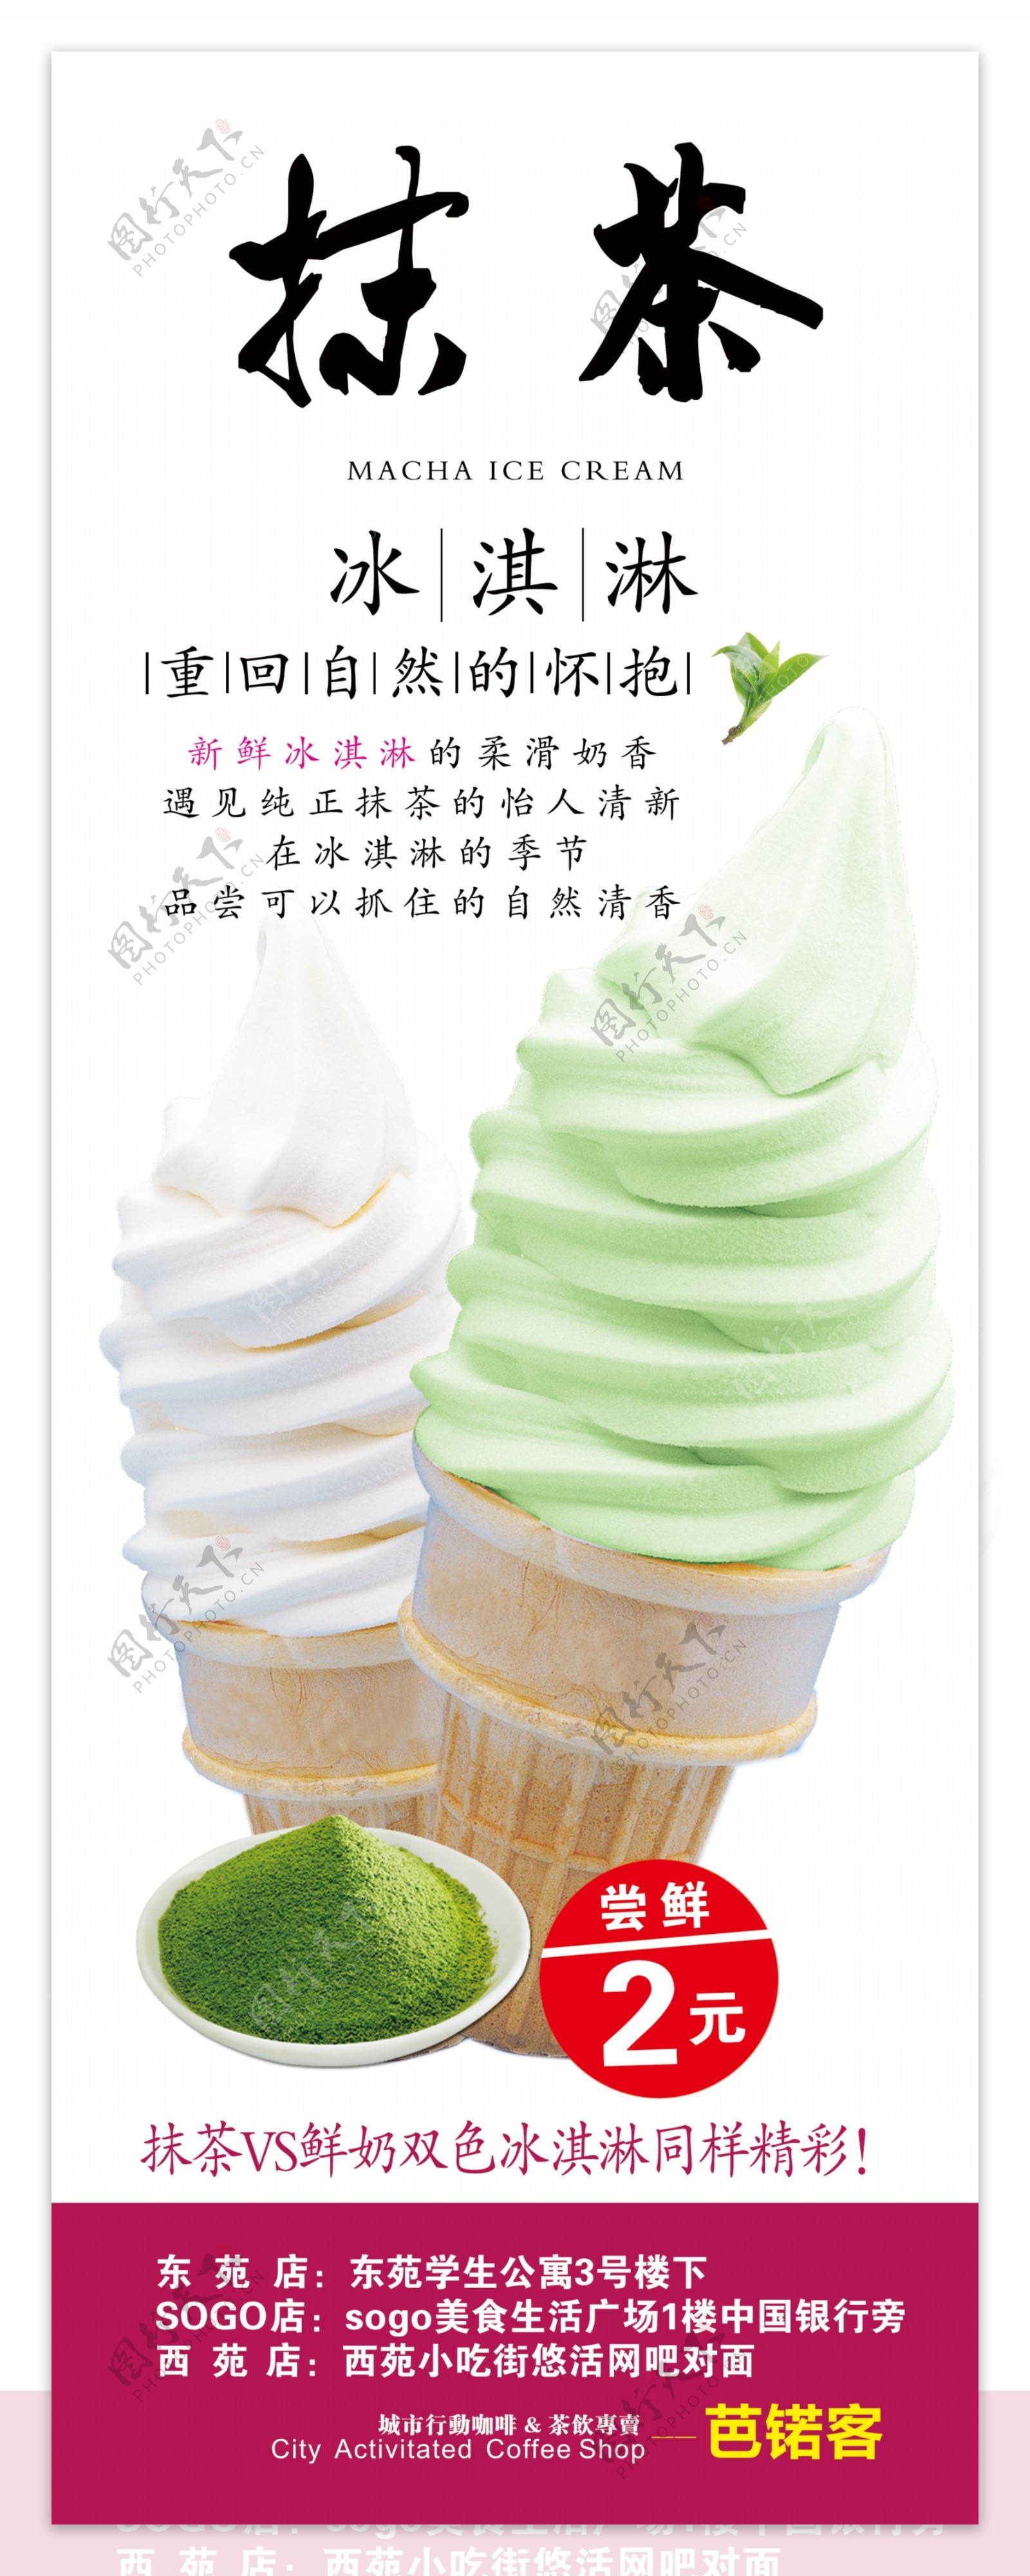 冷饮图片-抹茶冰淇淋_蛙客网viwik.com